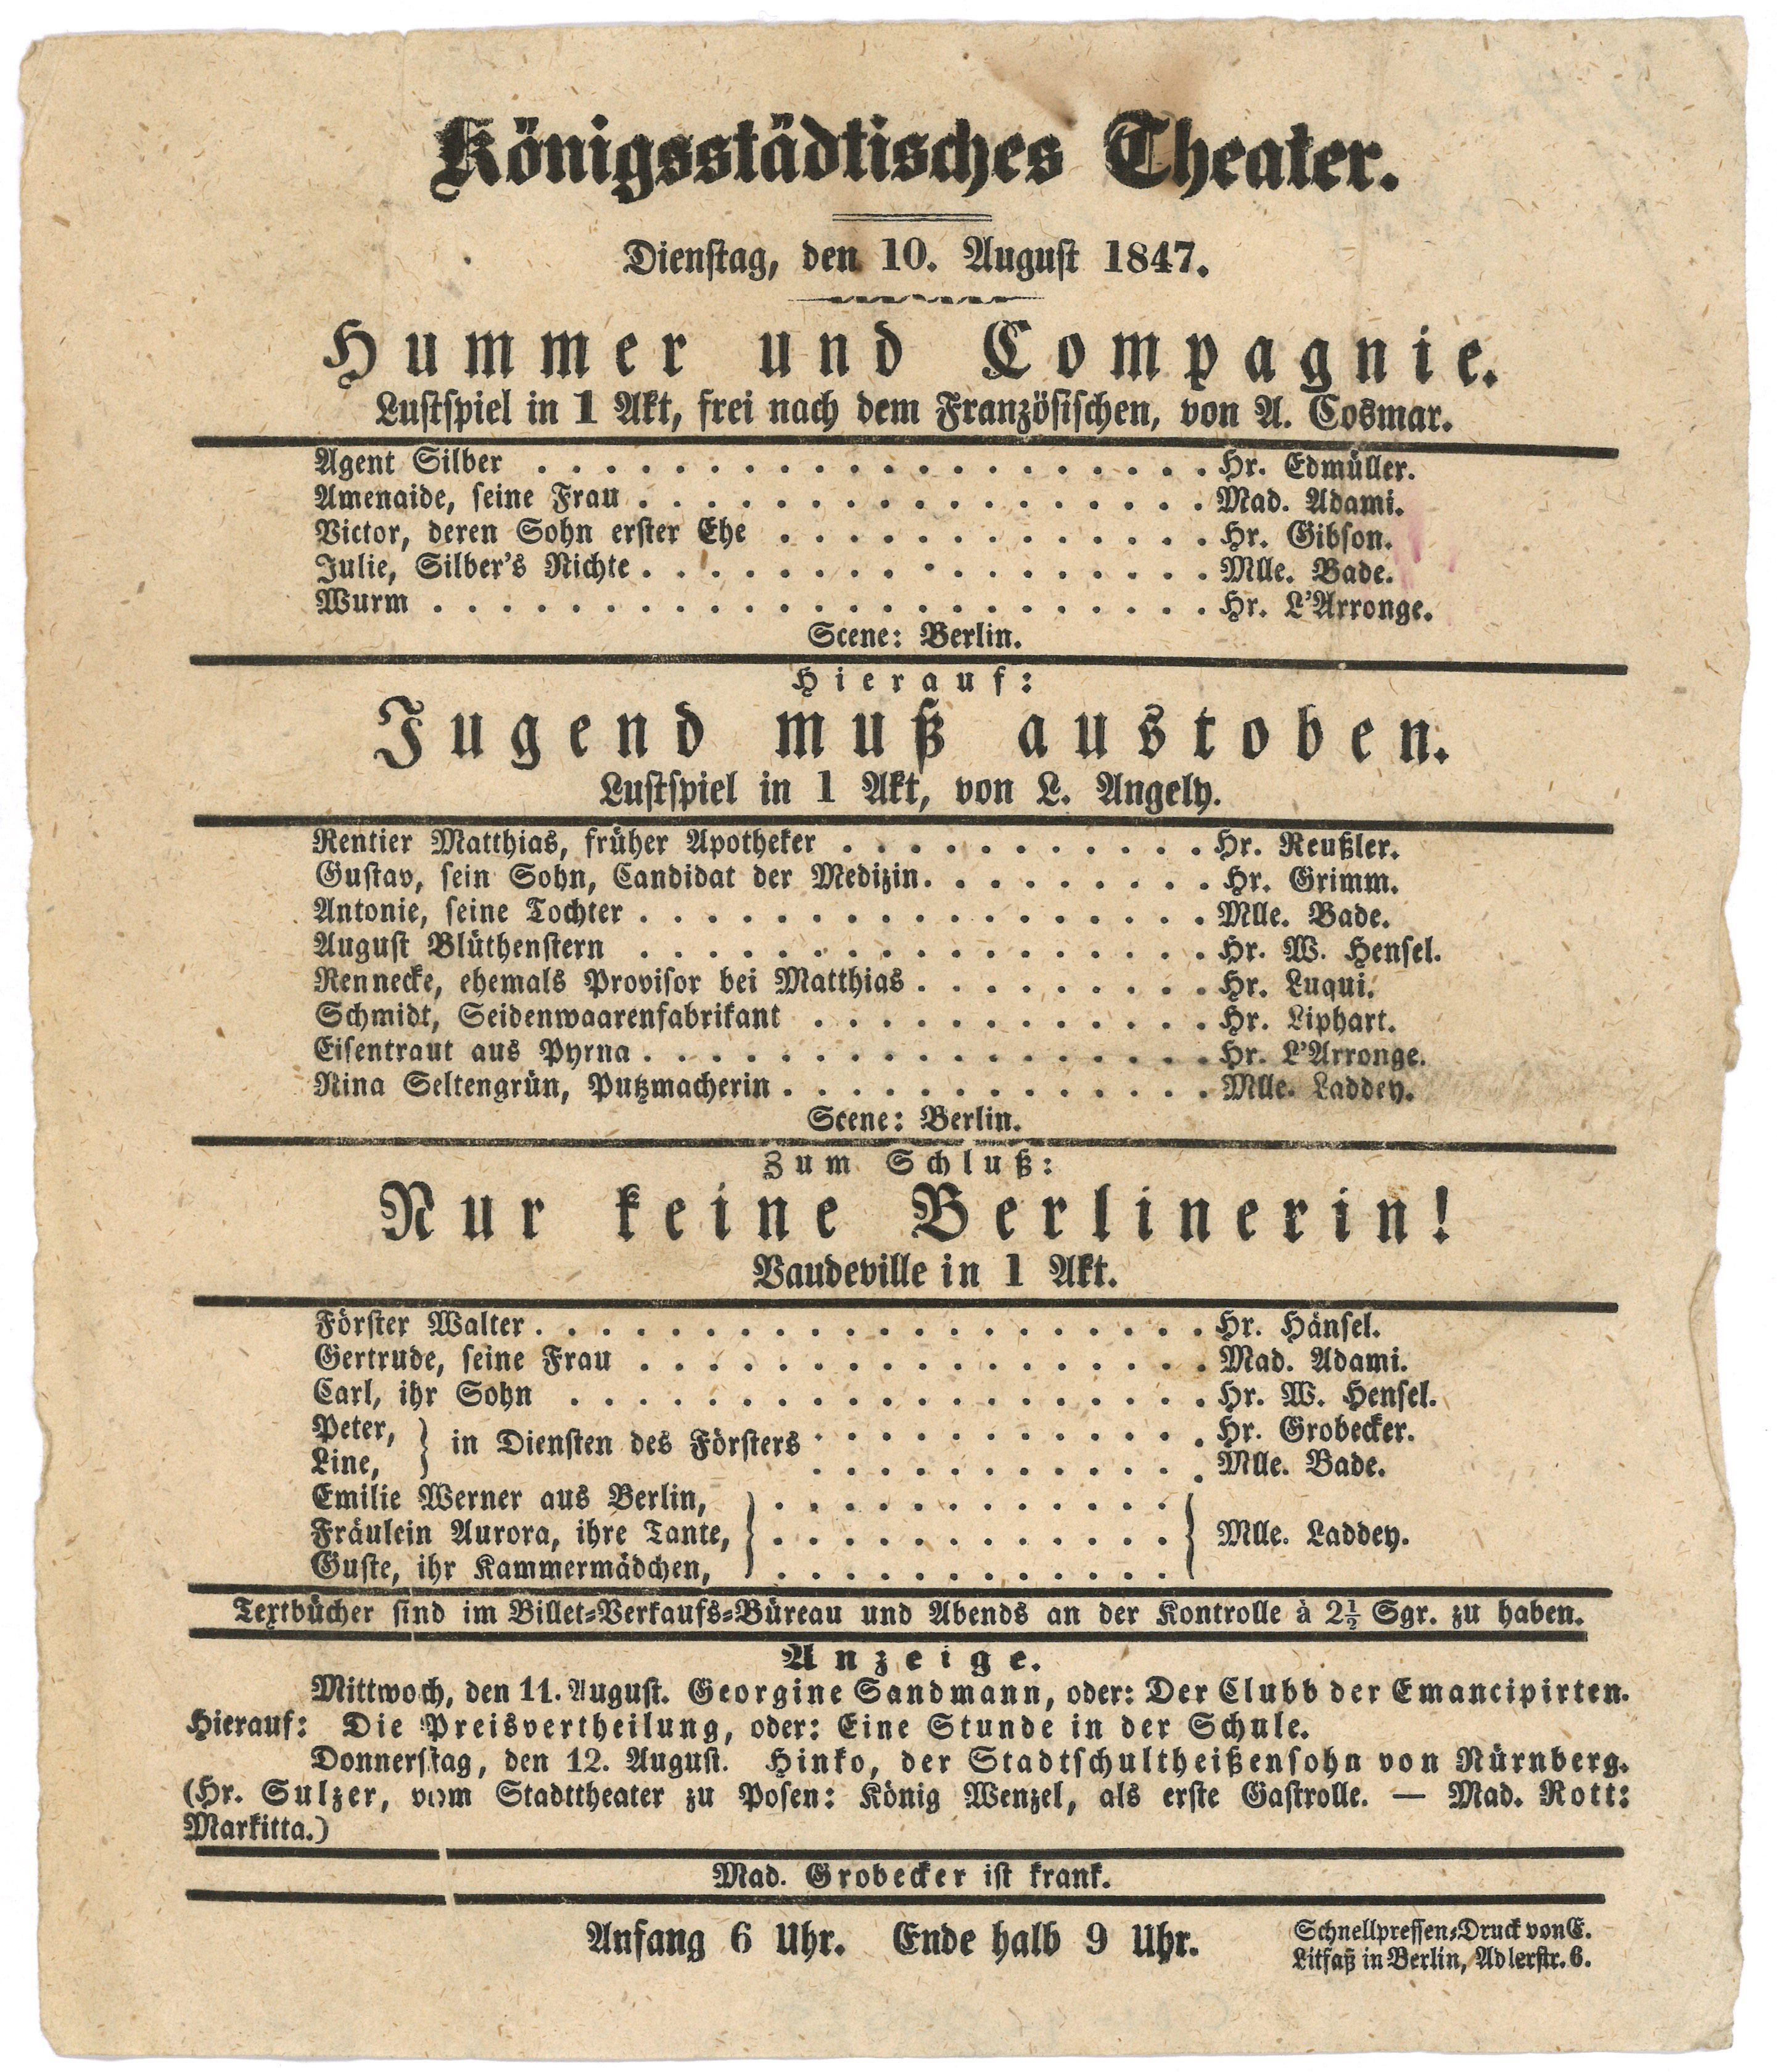 Theaterzettel des Königsstädtischen Theaters in Berlin für den 10. August 1847 (Landesgeschichtliche Vereinigung für die Mark Brandenburg e.V., Archiv CC BY)